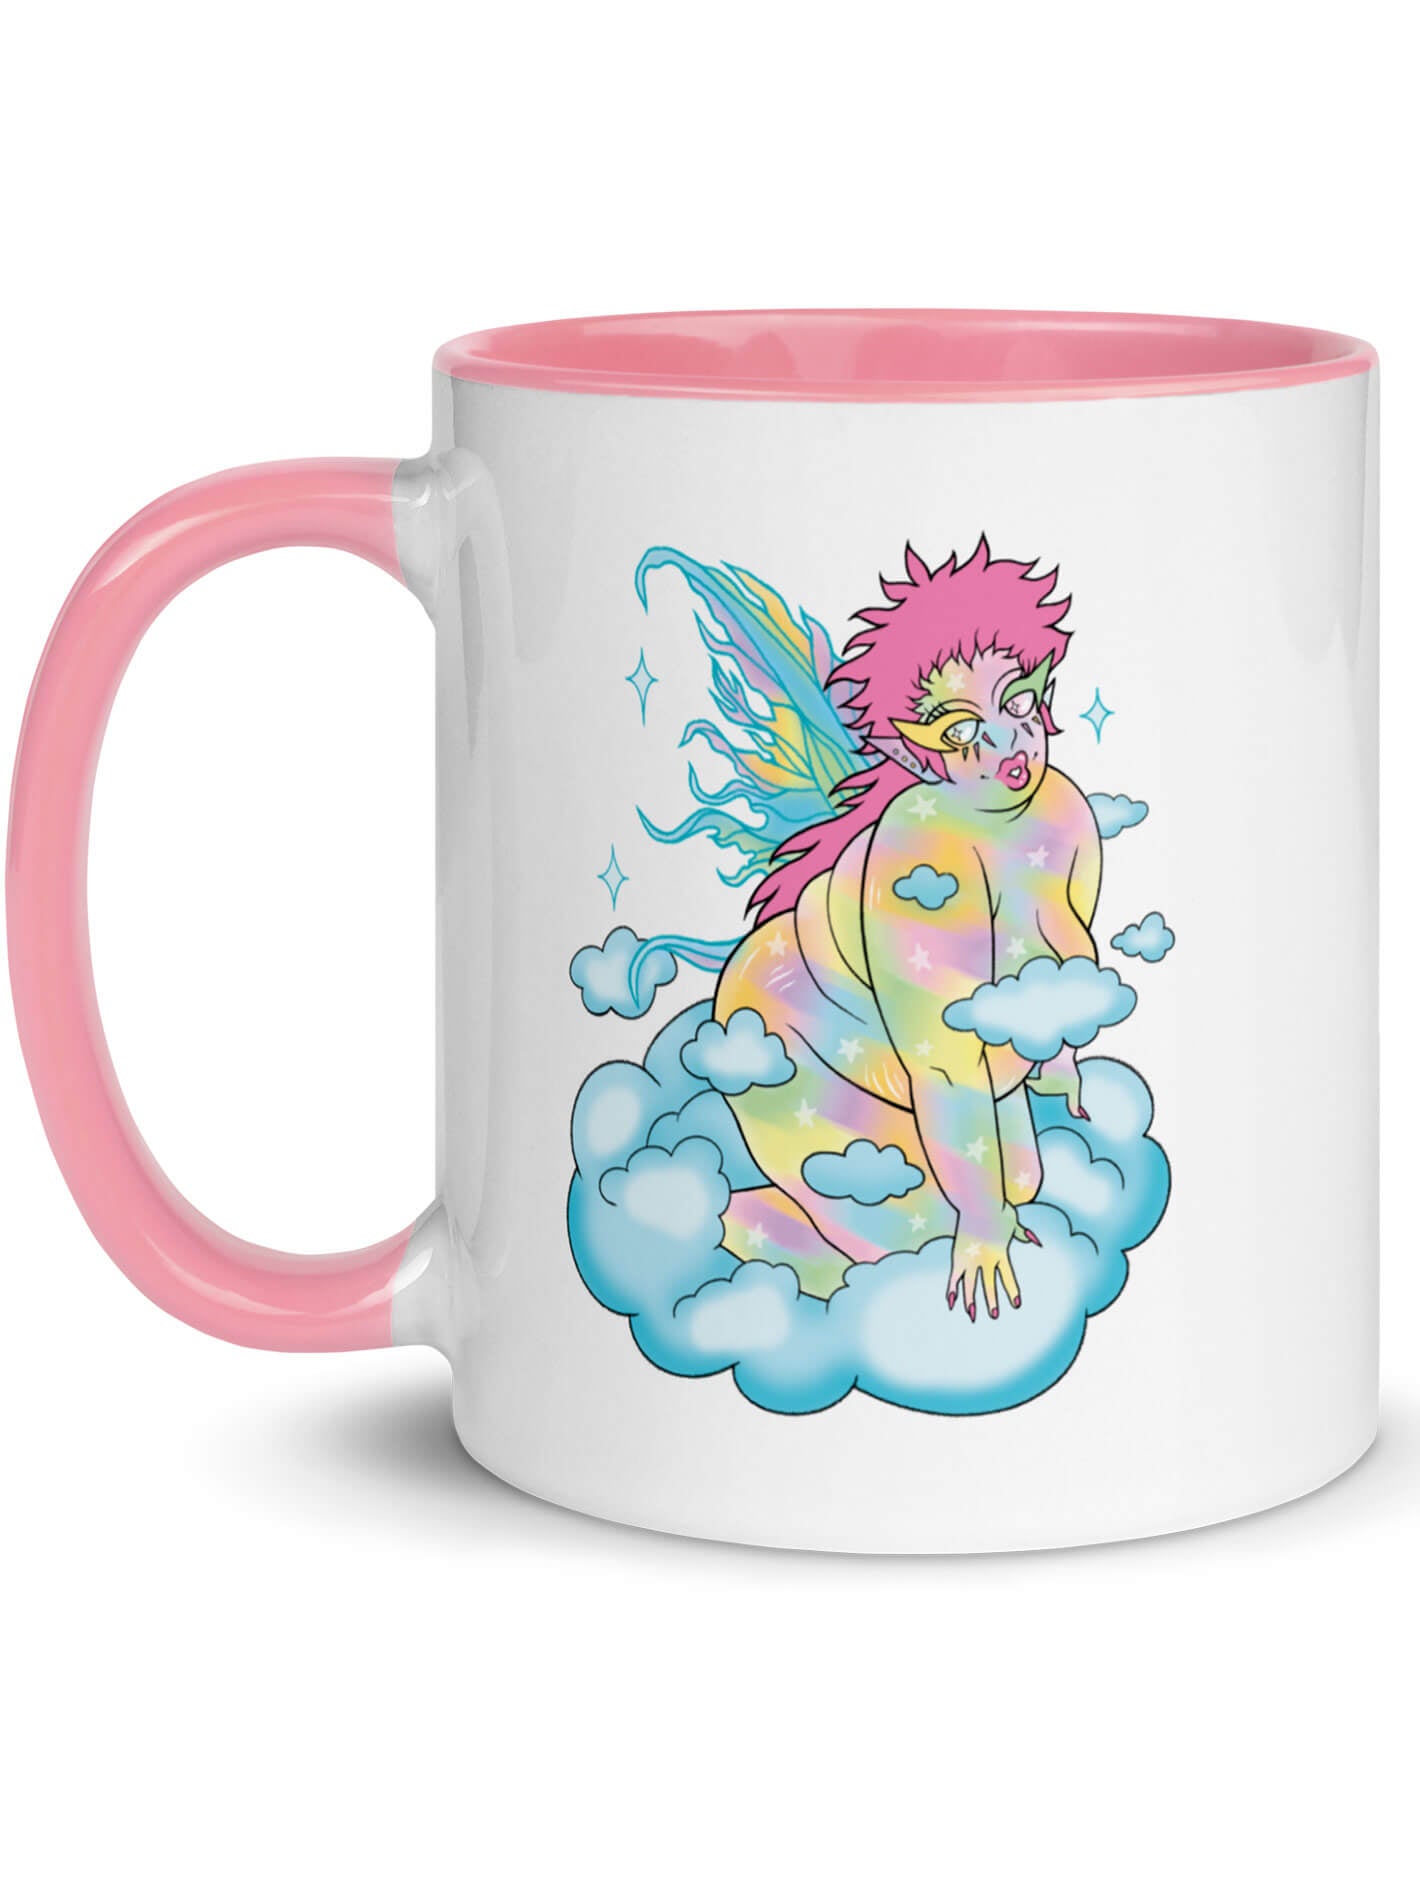 Fat positive gay fairy mug.